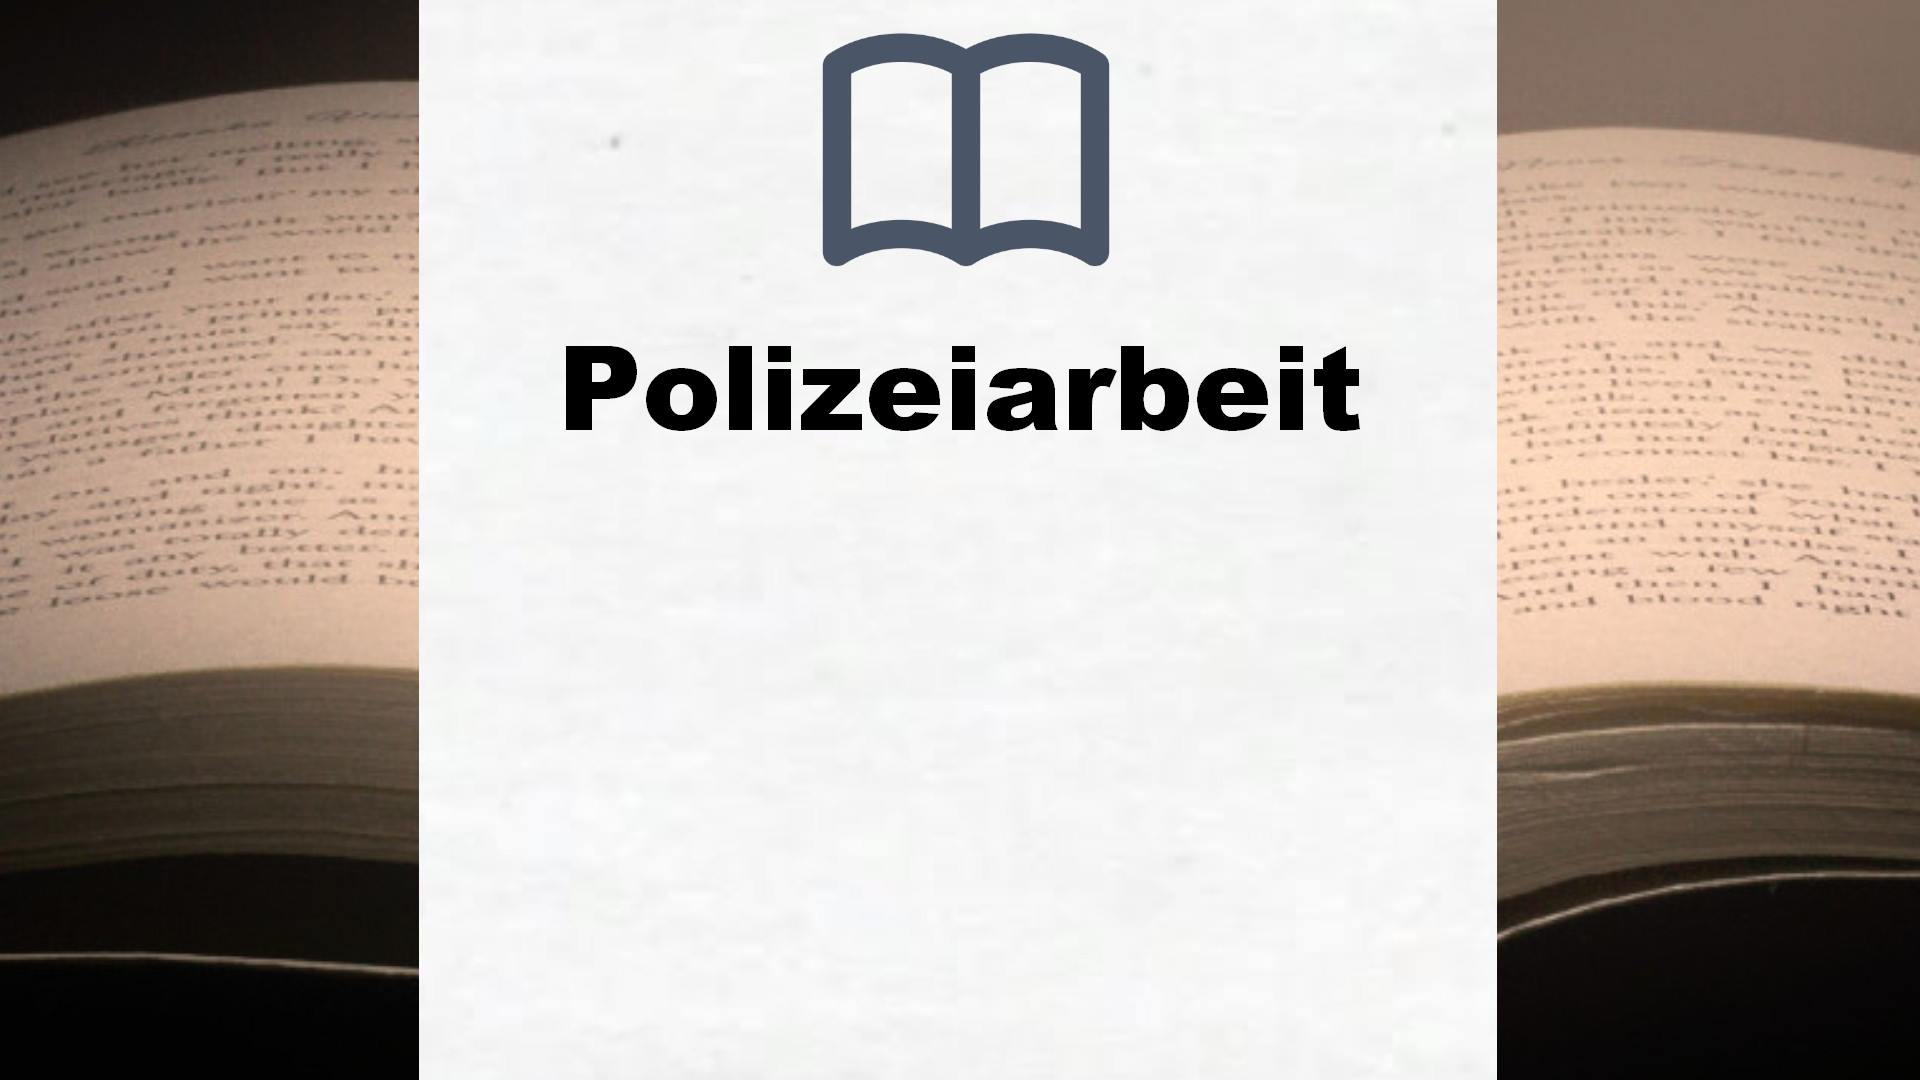 Bücher über Polizeiarbeit